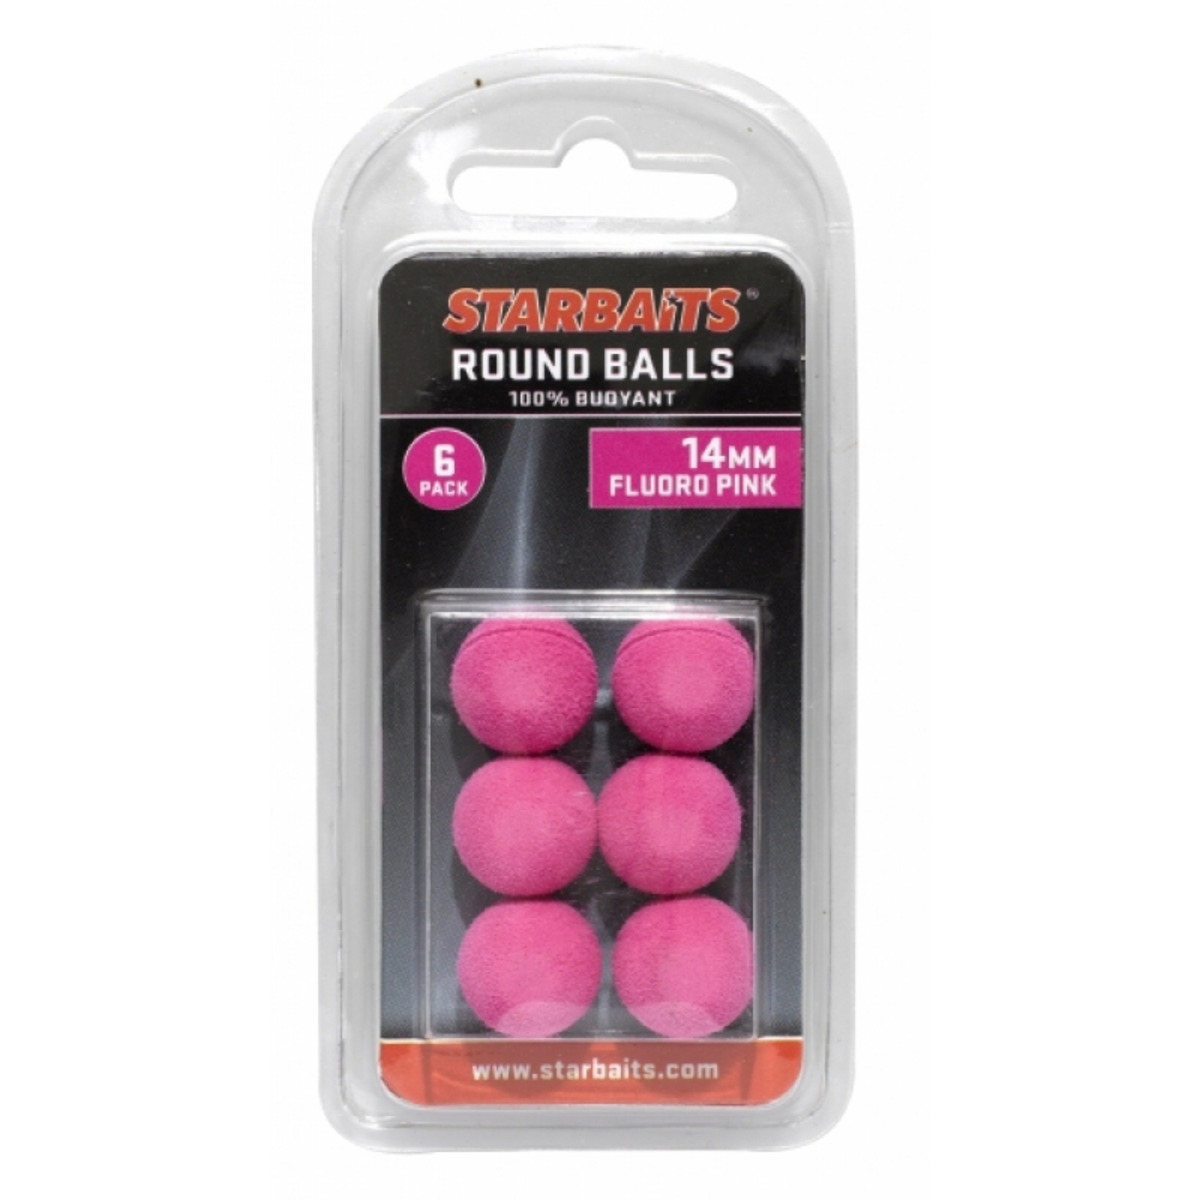 Starbaits Round Balls 14mm - Pink